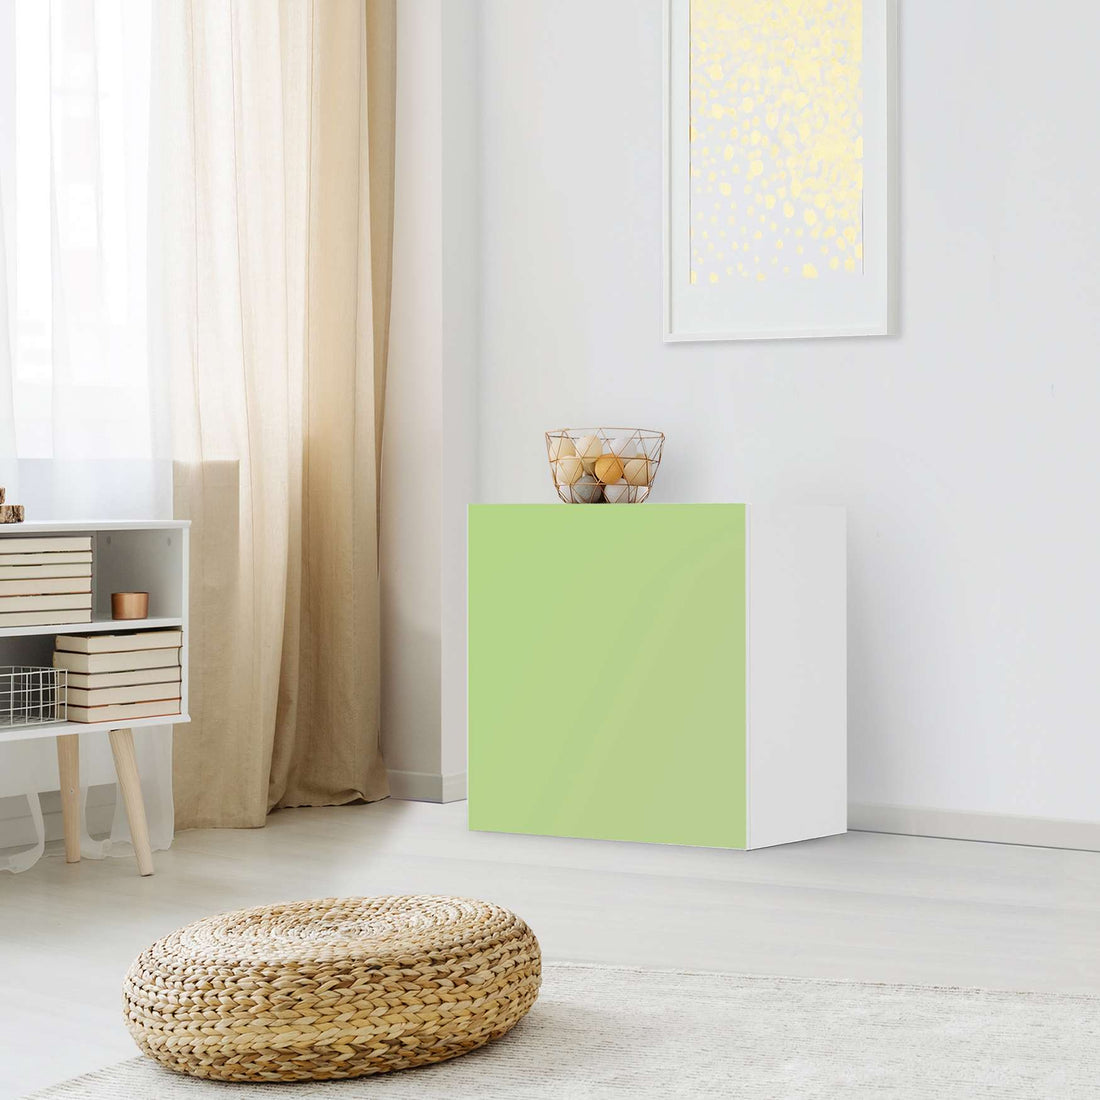 Klebefolie für Möbel Hellgrün Light - IKEA Besta Regal 1 Türe - Wohnzimmer